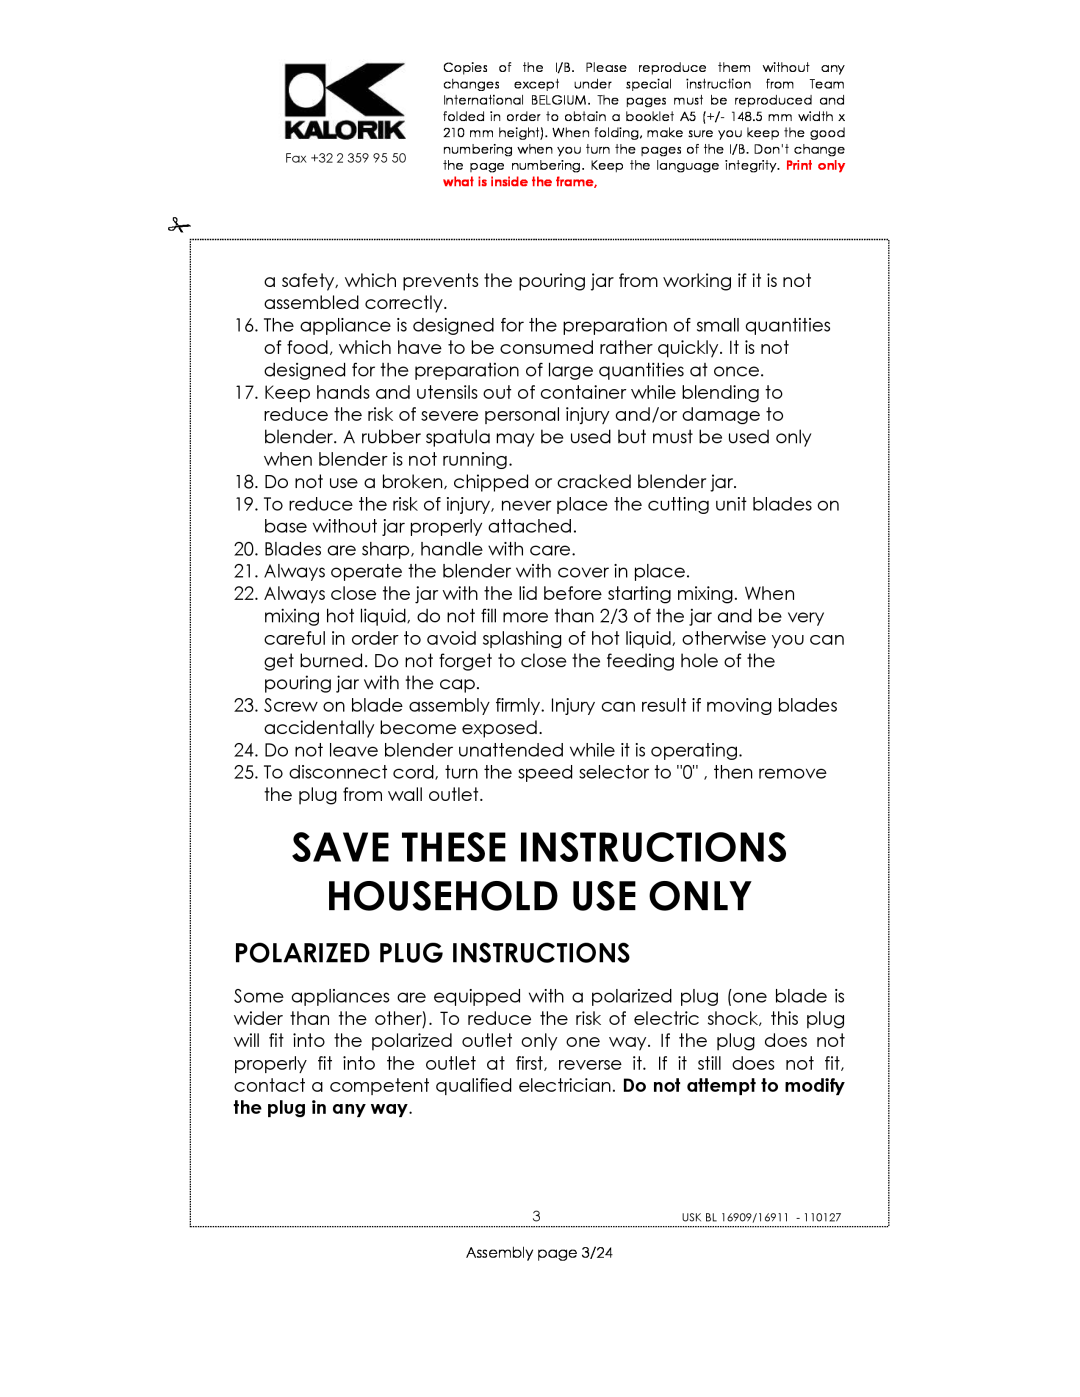 Kalorik usk bl 16909, USK BL 16911, USK BL 33029 Save These Instructions Household Use Only, Polarized Plug Instructions 